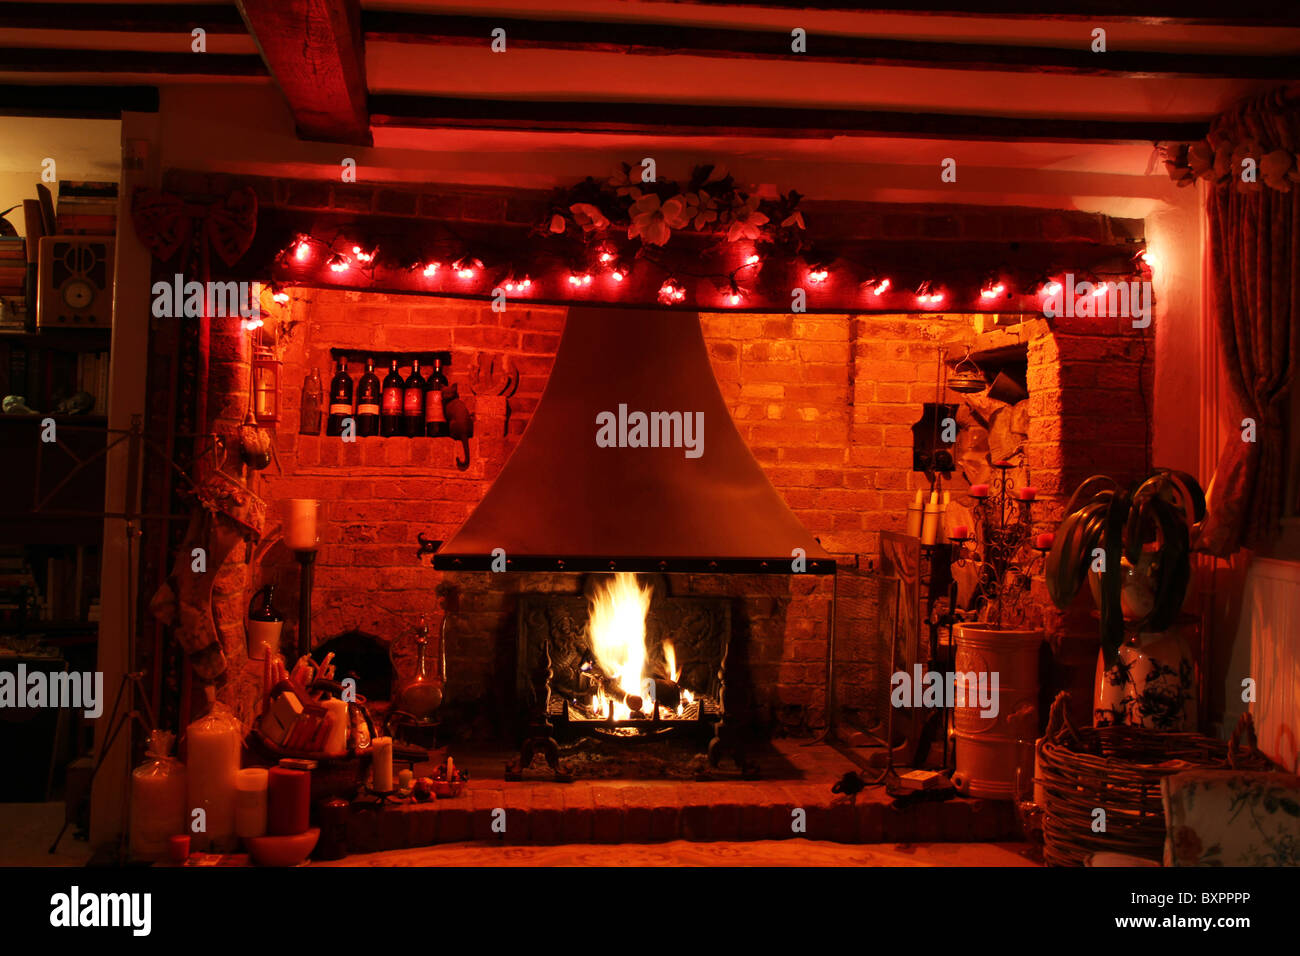 Ein Inglenook Kamin in einem englischen Landhaus an Weihnachten dekoriert. Stockfoto